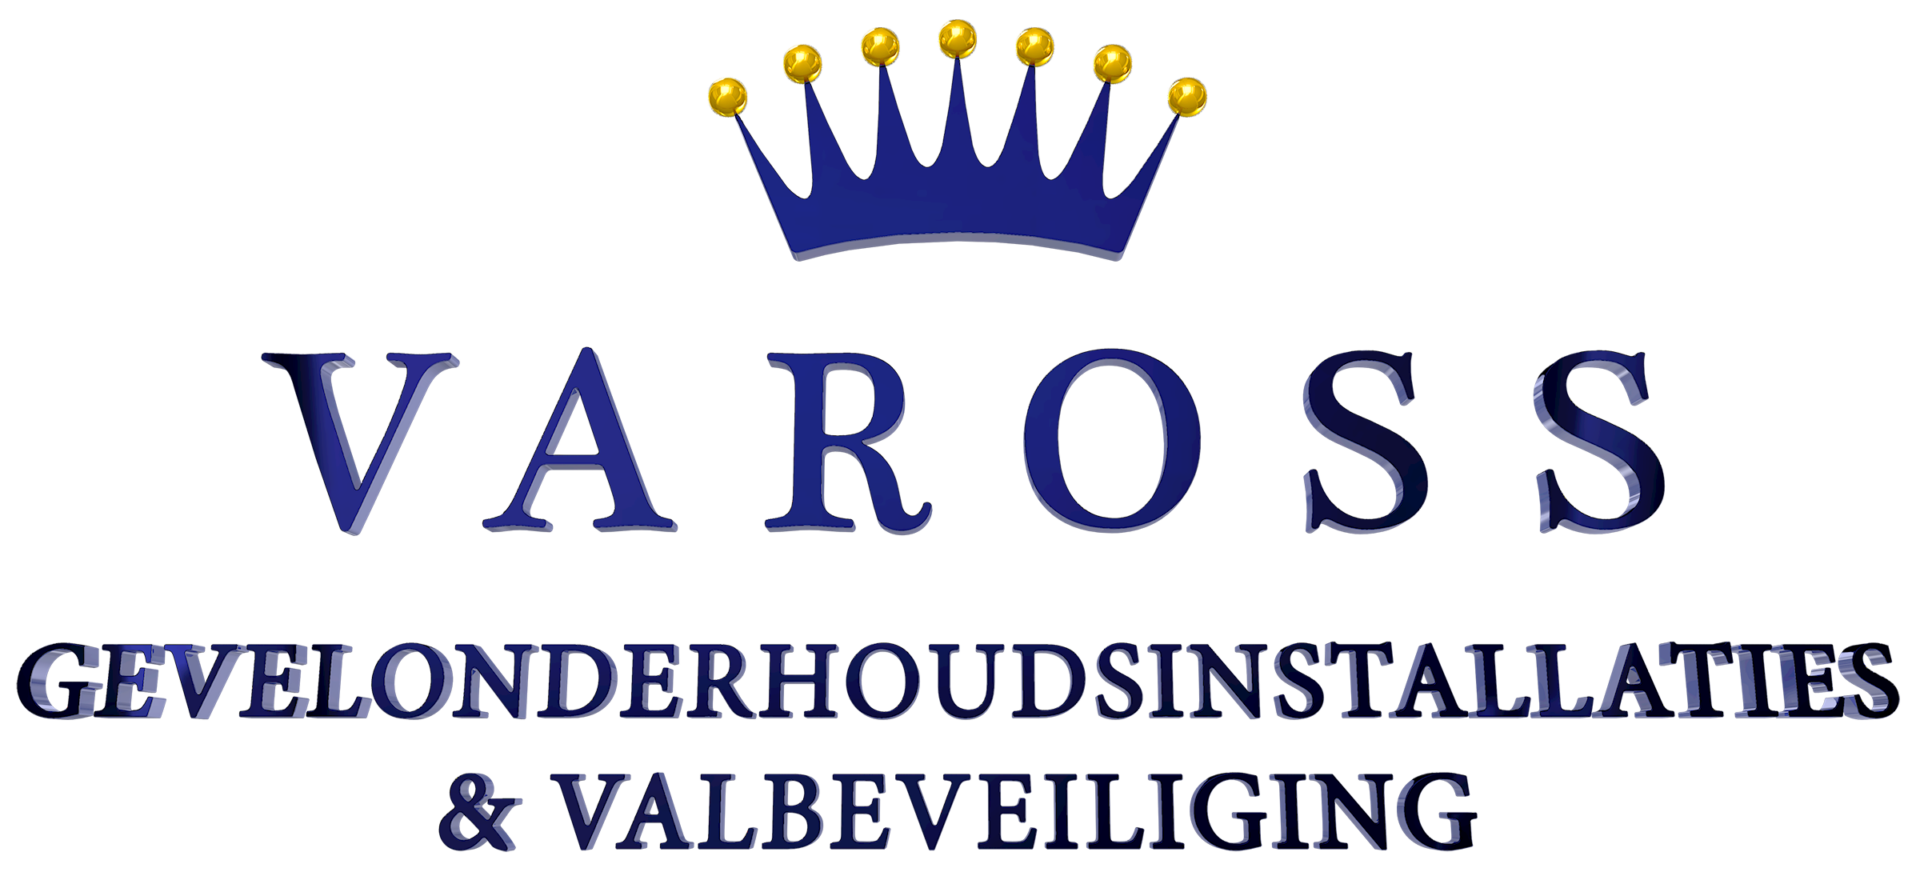 Het logo van Vaross uitgewerkt in 3D.